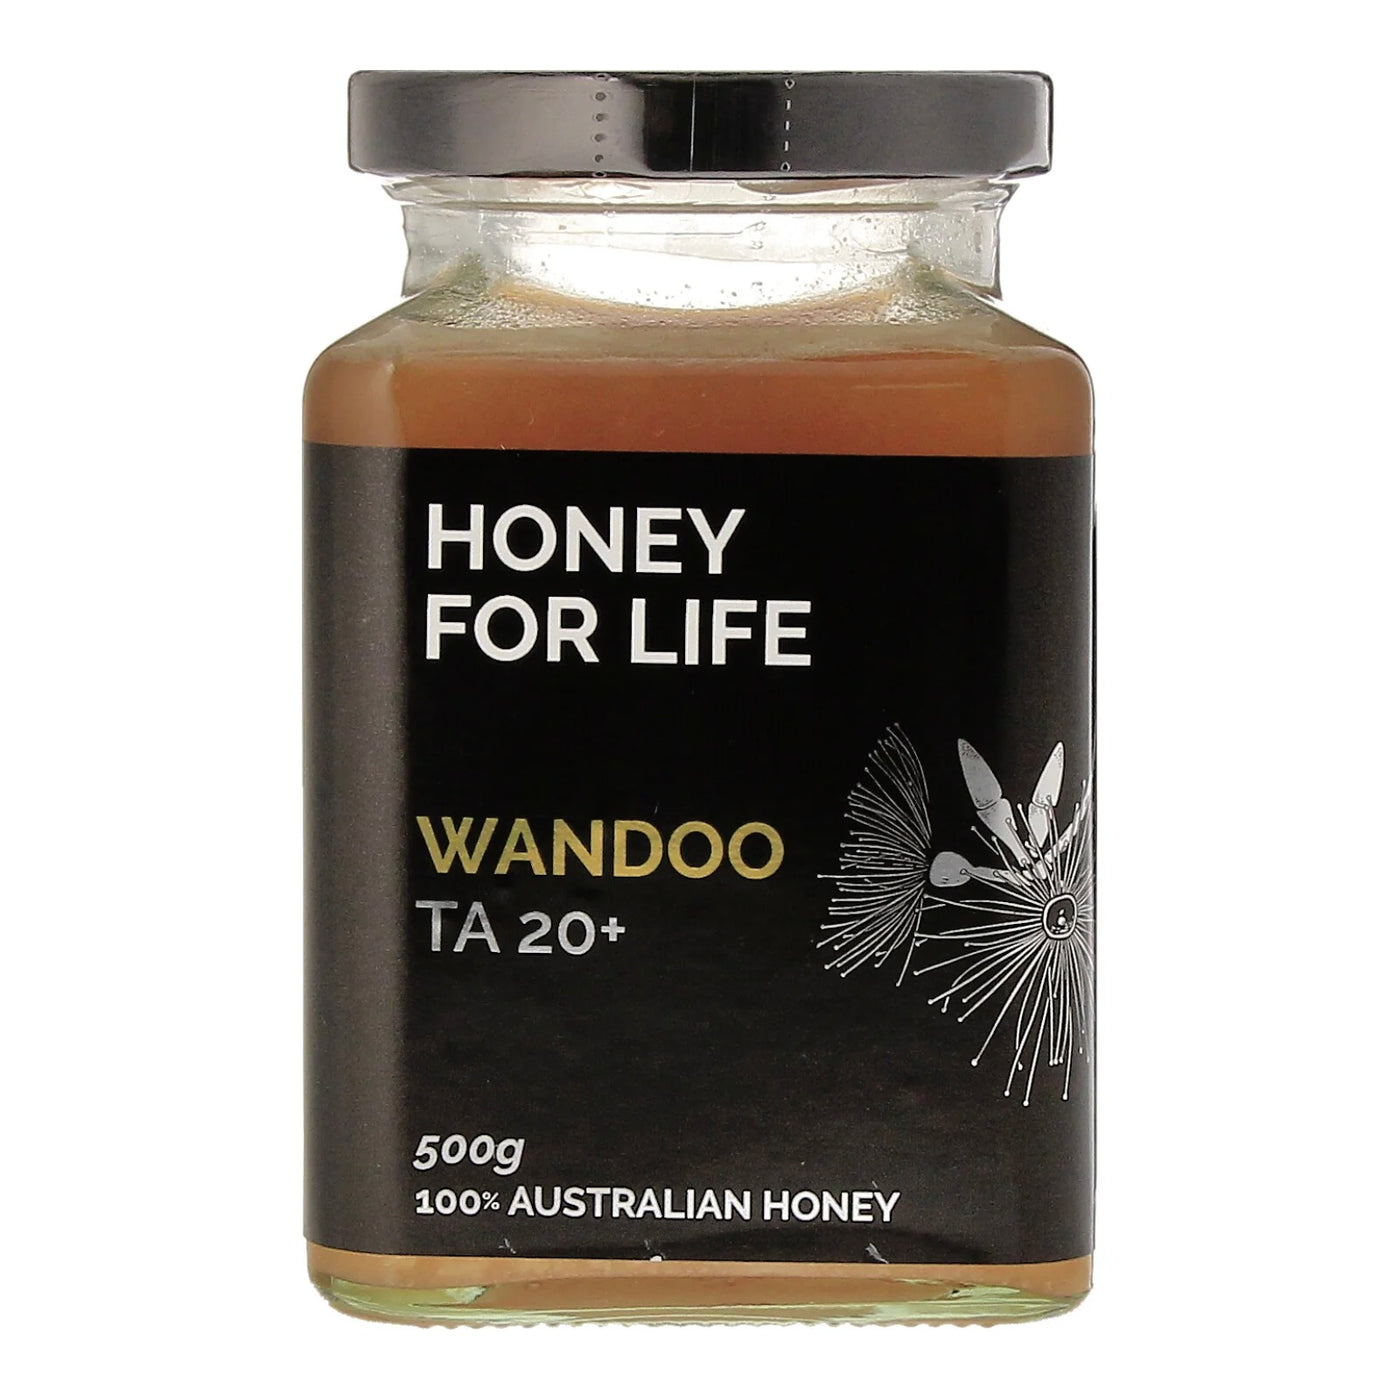 Wandoo TA20+ | HONEY FOR LIFE | 500g